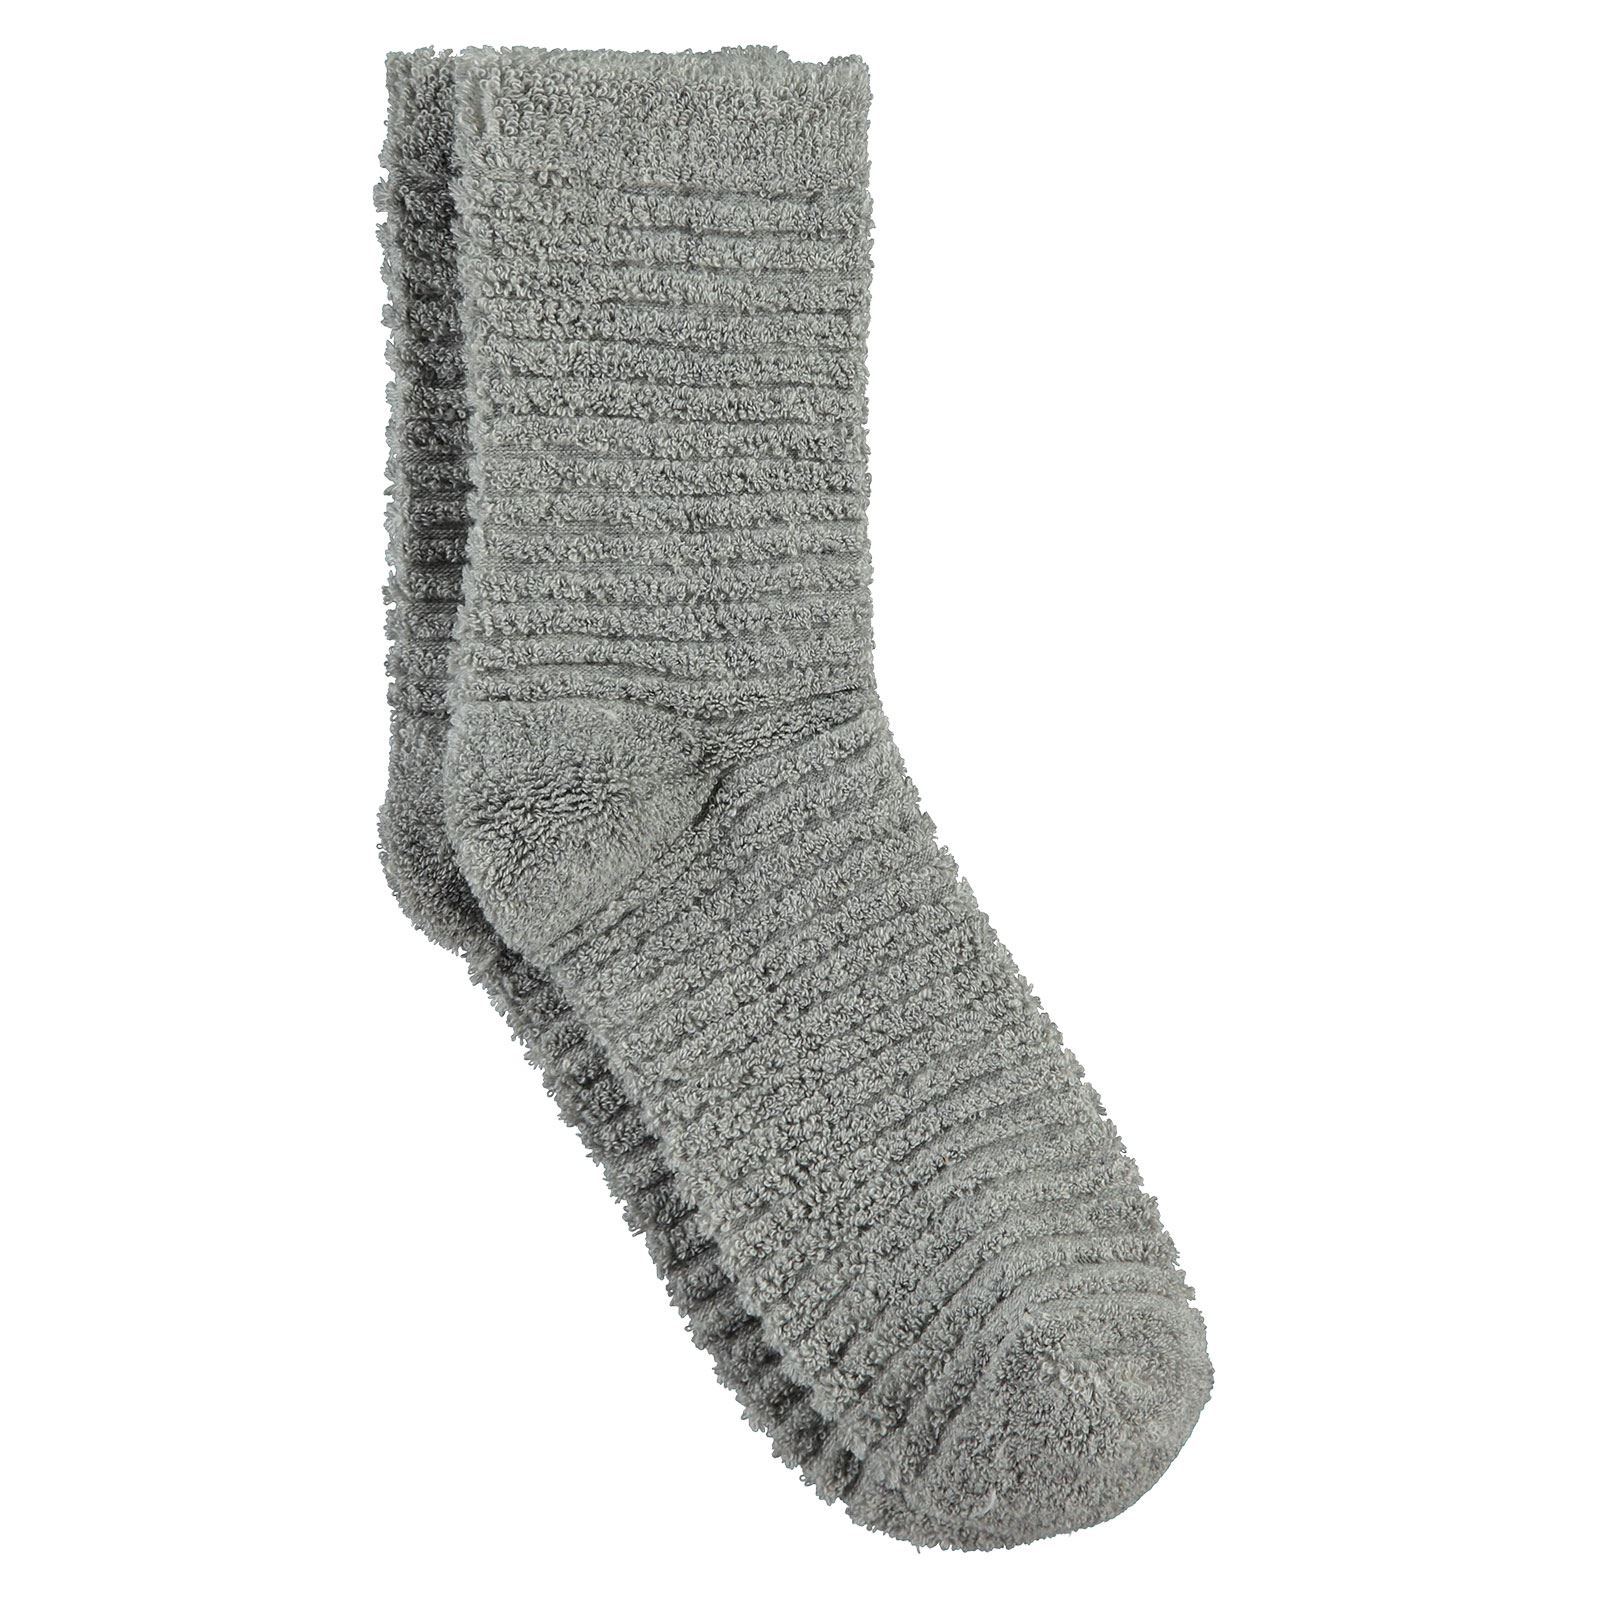 Bella Calze Kız Çocuk Ters Havlu Soket Çorap 36-40 Numara Gri